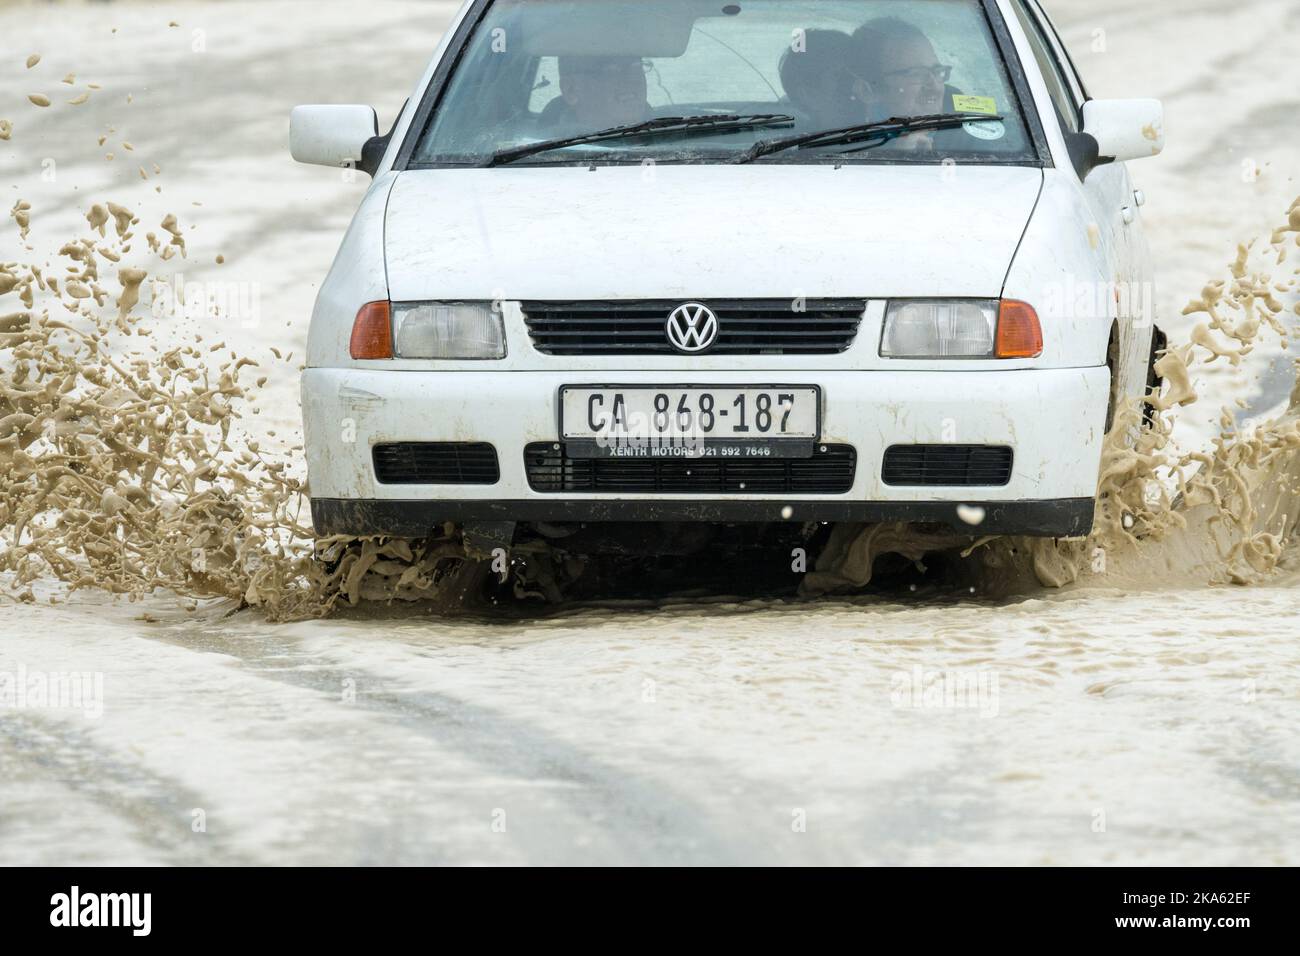 El automóvil sedán blanco conduce a través de una carretera cubierta de espuma marina durante una tormenta de invierno en Ciudad del Cabo, Sudáfrica Concepto de seguridad vial Foto de stock